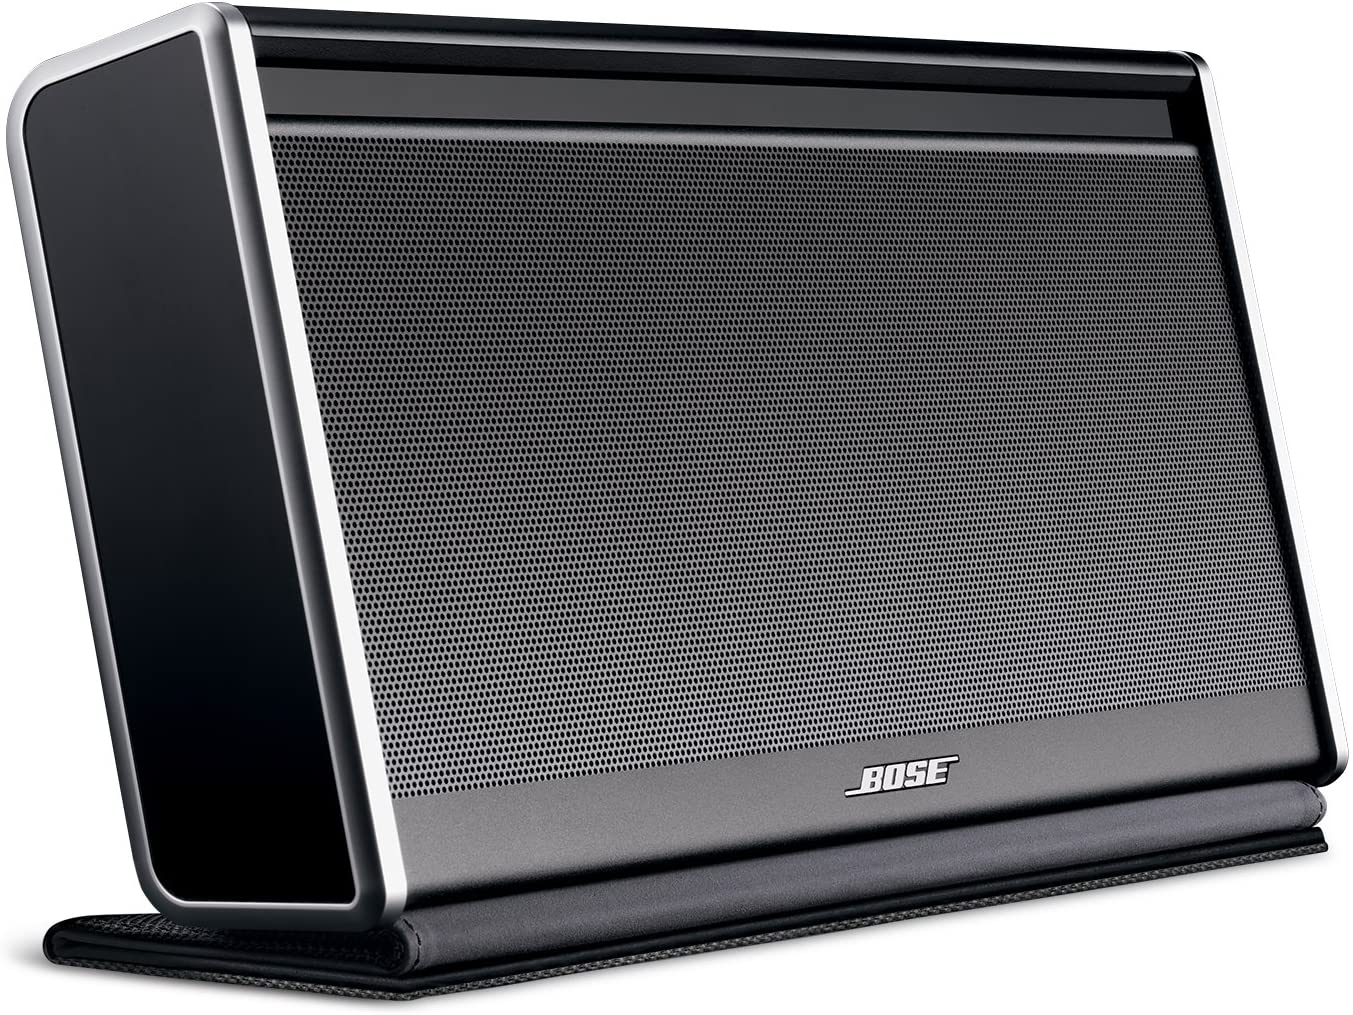 Bose Sound Link Bluetooth SpeakerⅡオーディオ機器